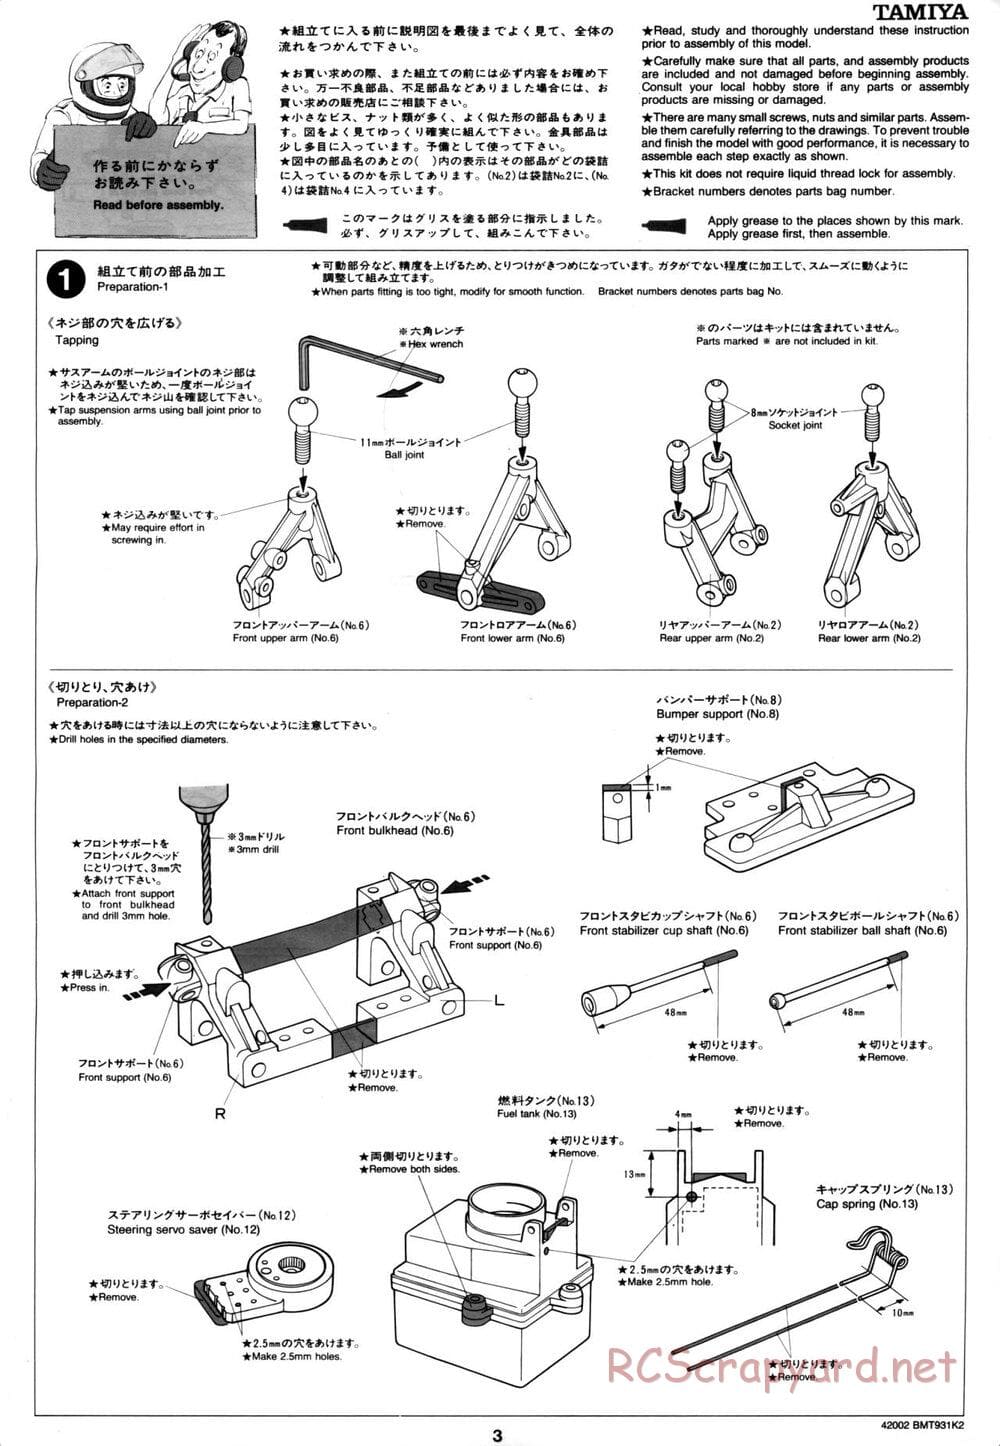 Tamiya - BMT 931 K2 Racing Chassis - Manual - Page 3